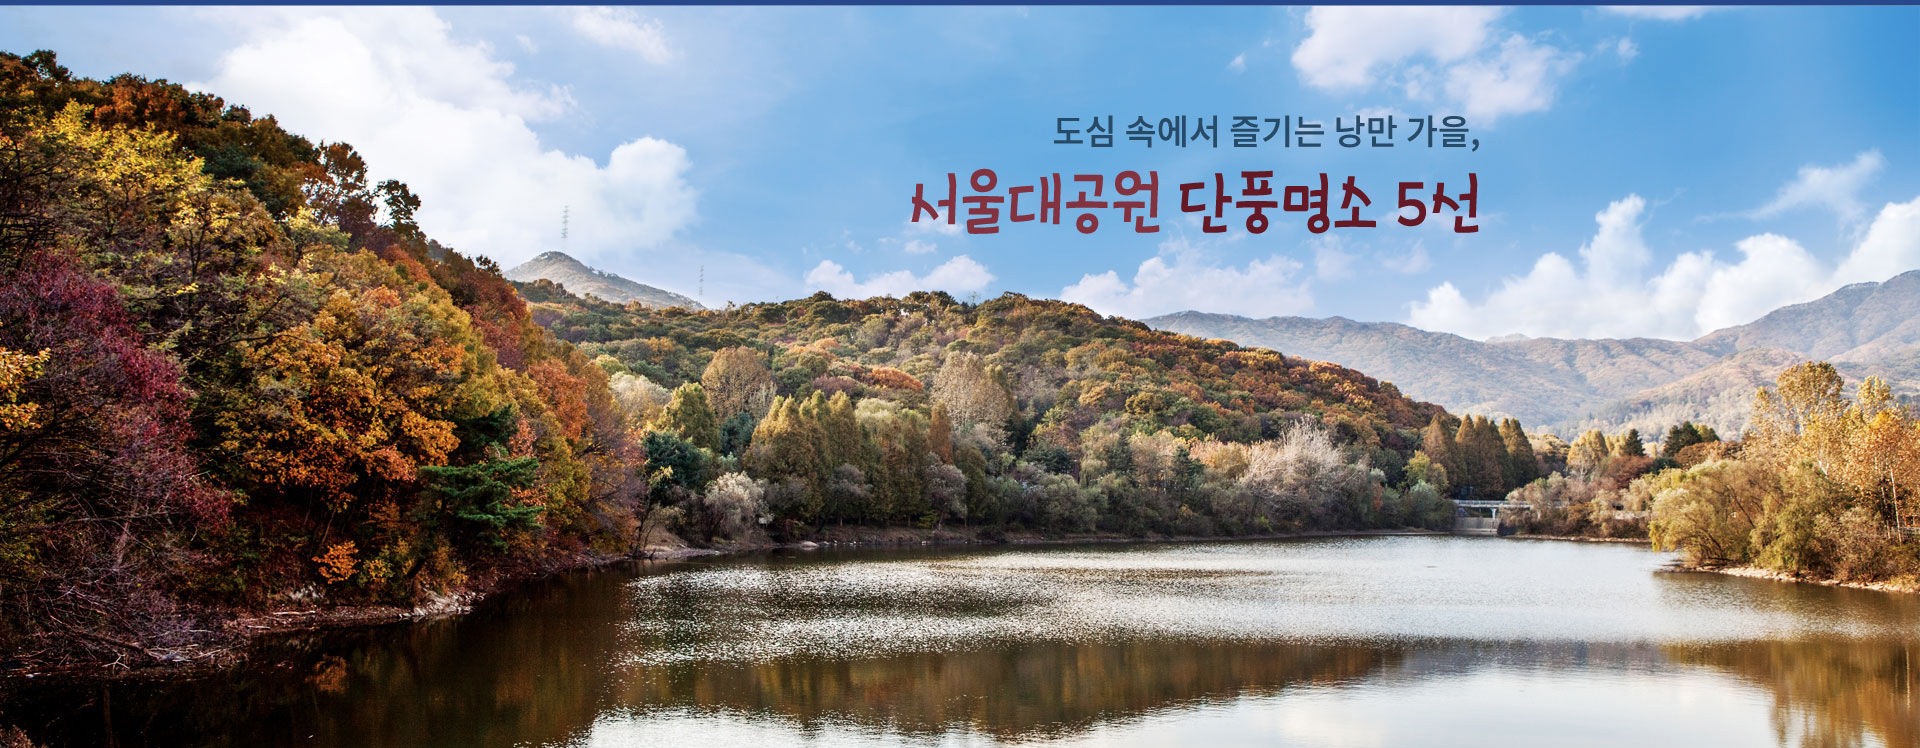 도심 속에서 즐기는 낭만 가을, 서울대공원 단풍명소 5선